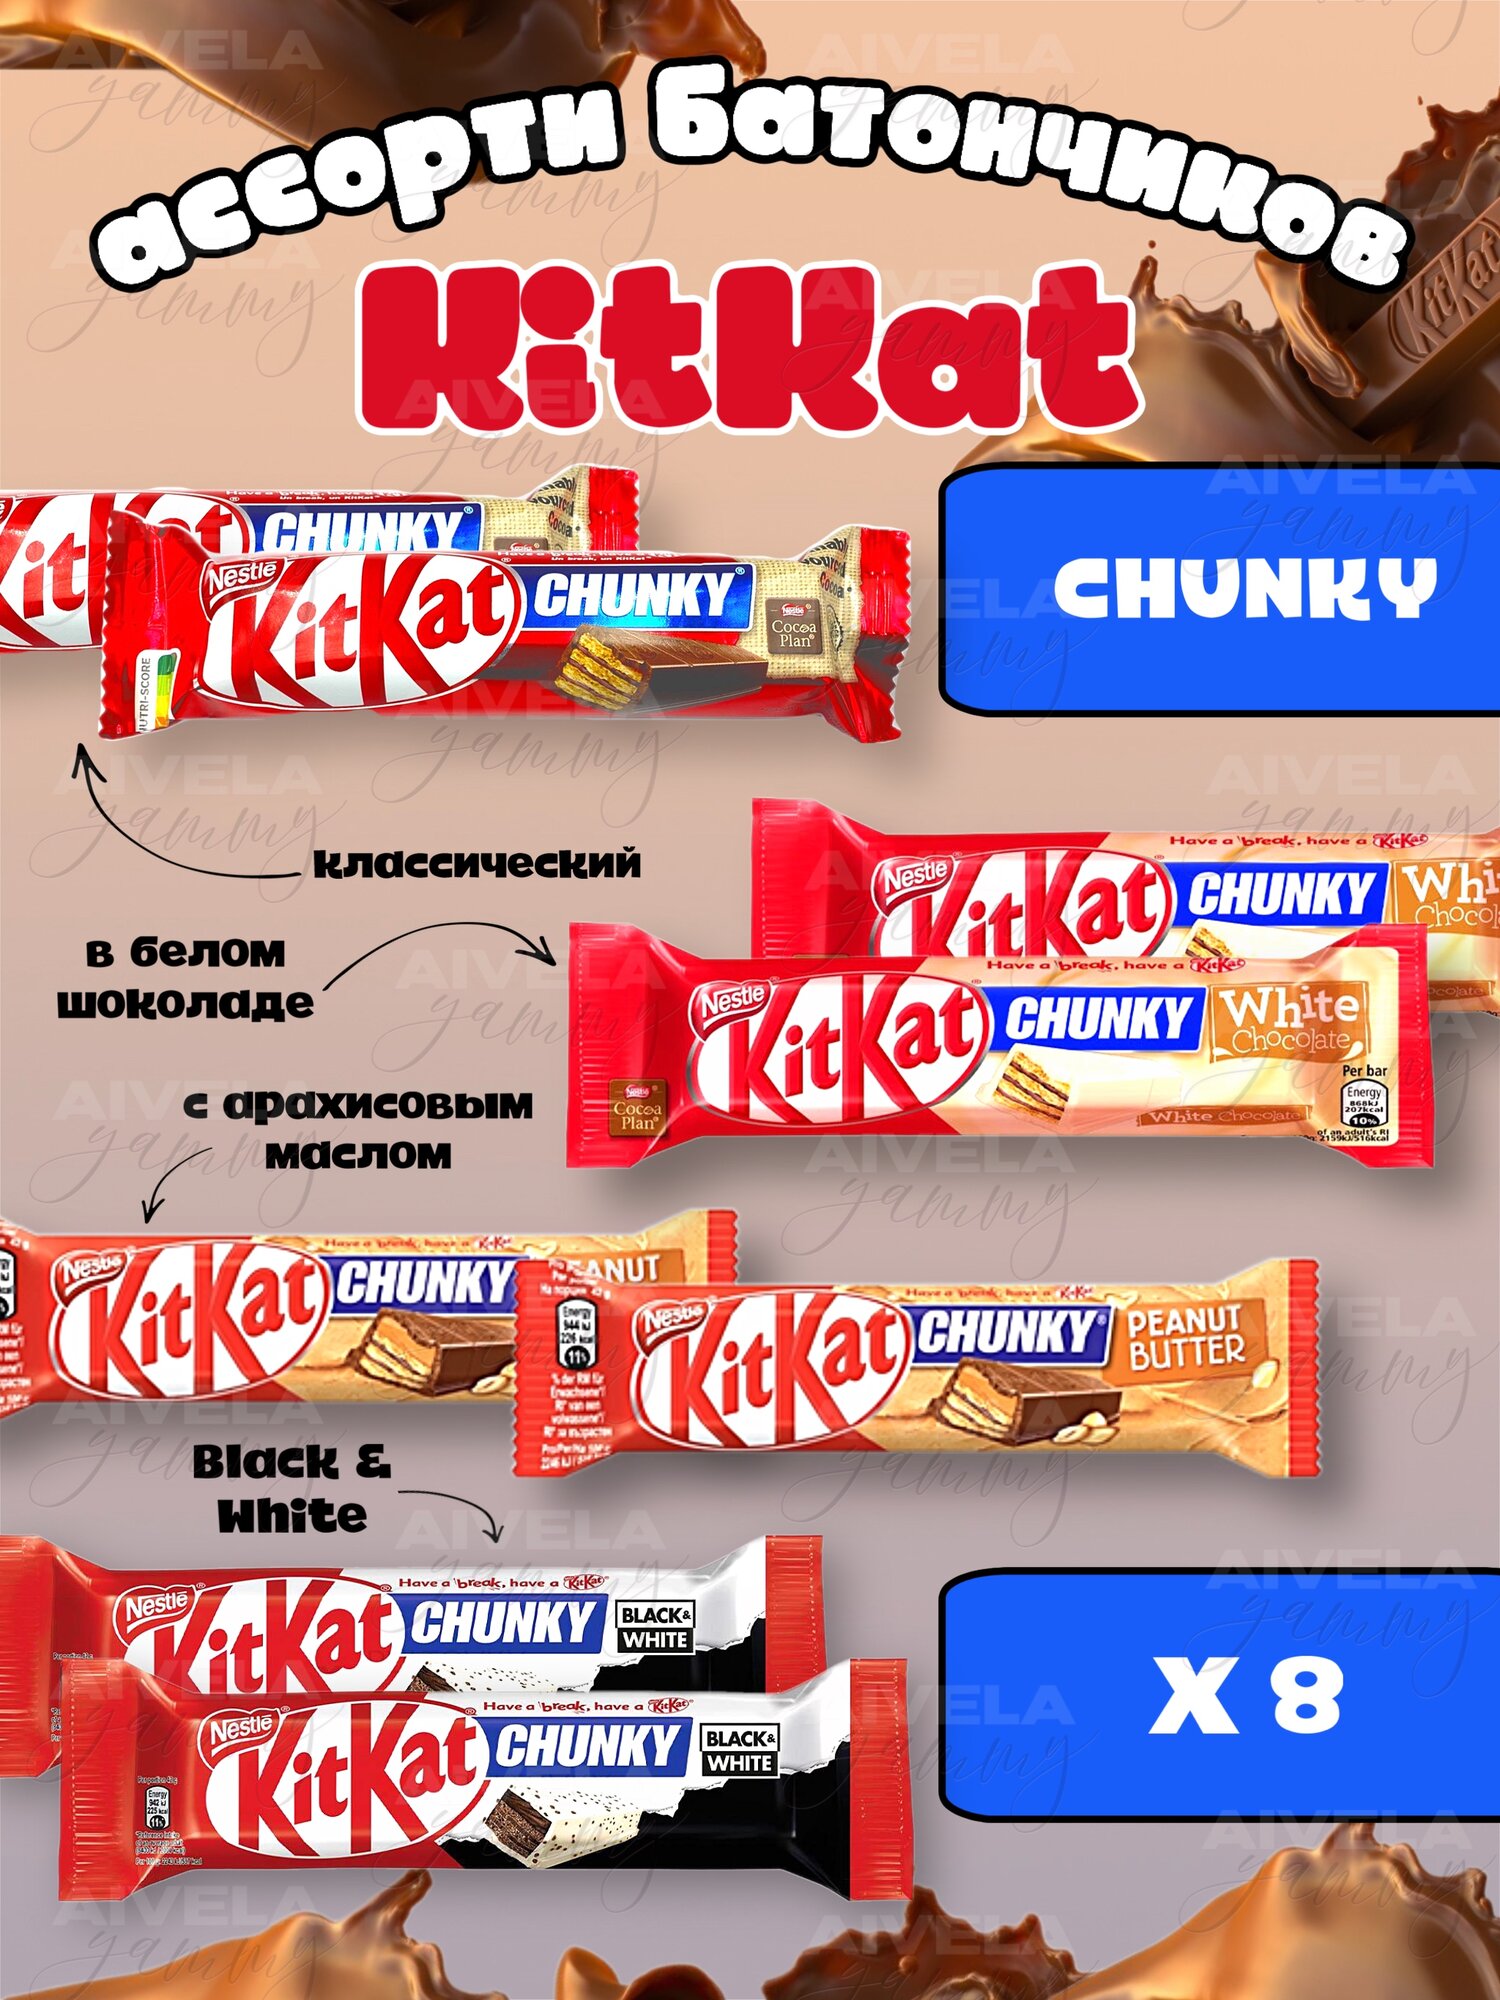 Шоколадный батончик KitKat Chunky / Киткат шоколад / Сладости из европы в упаковке